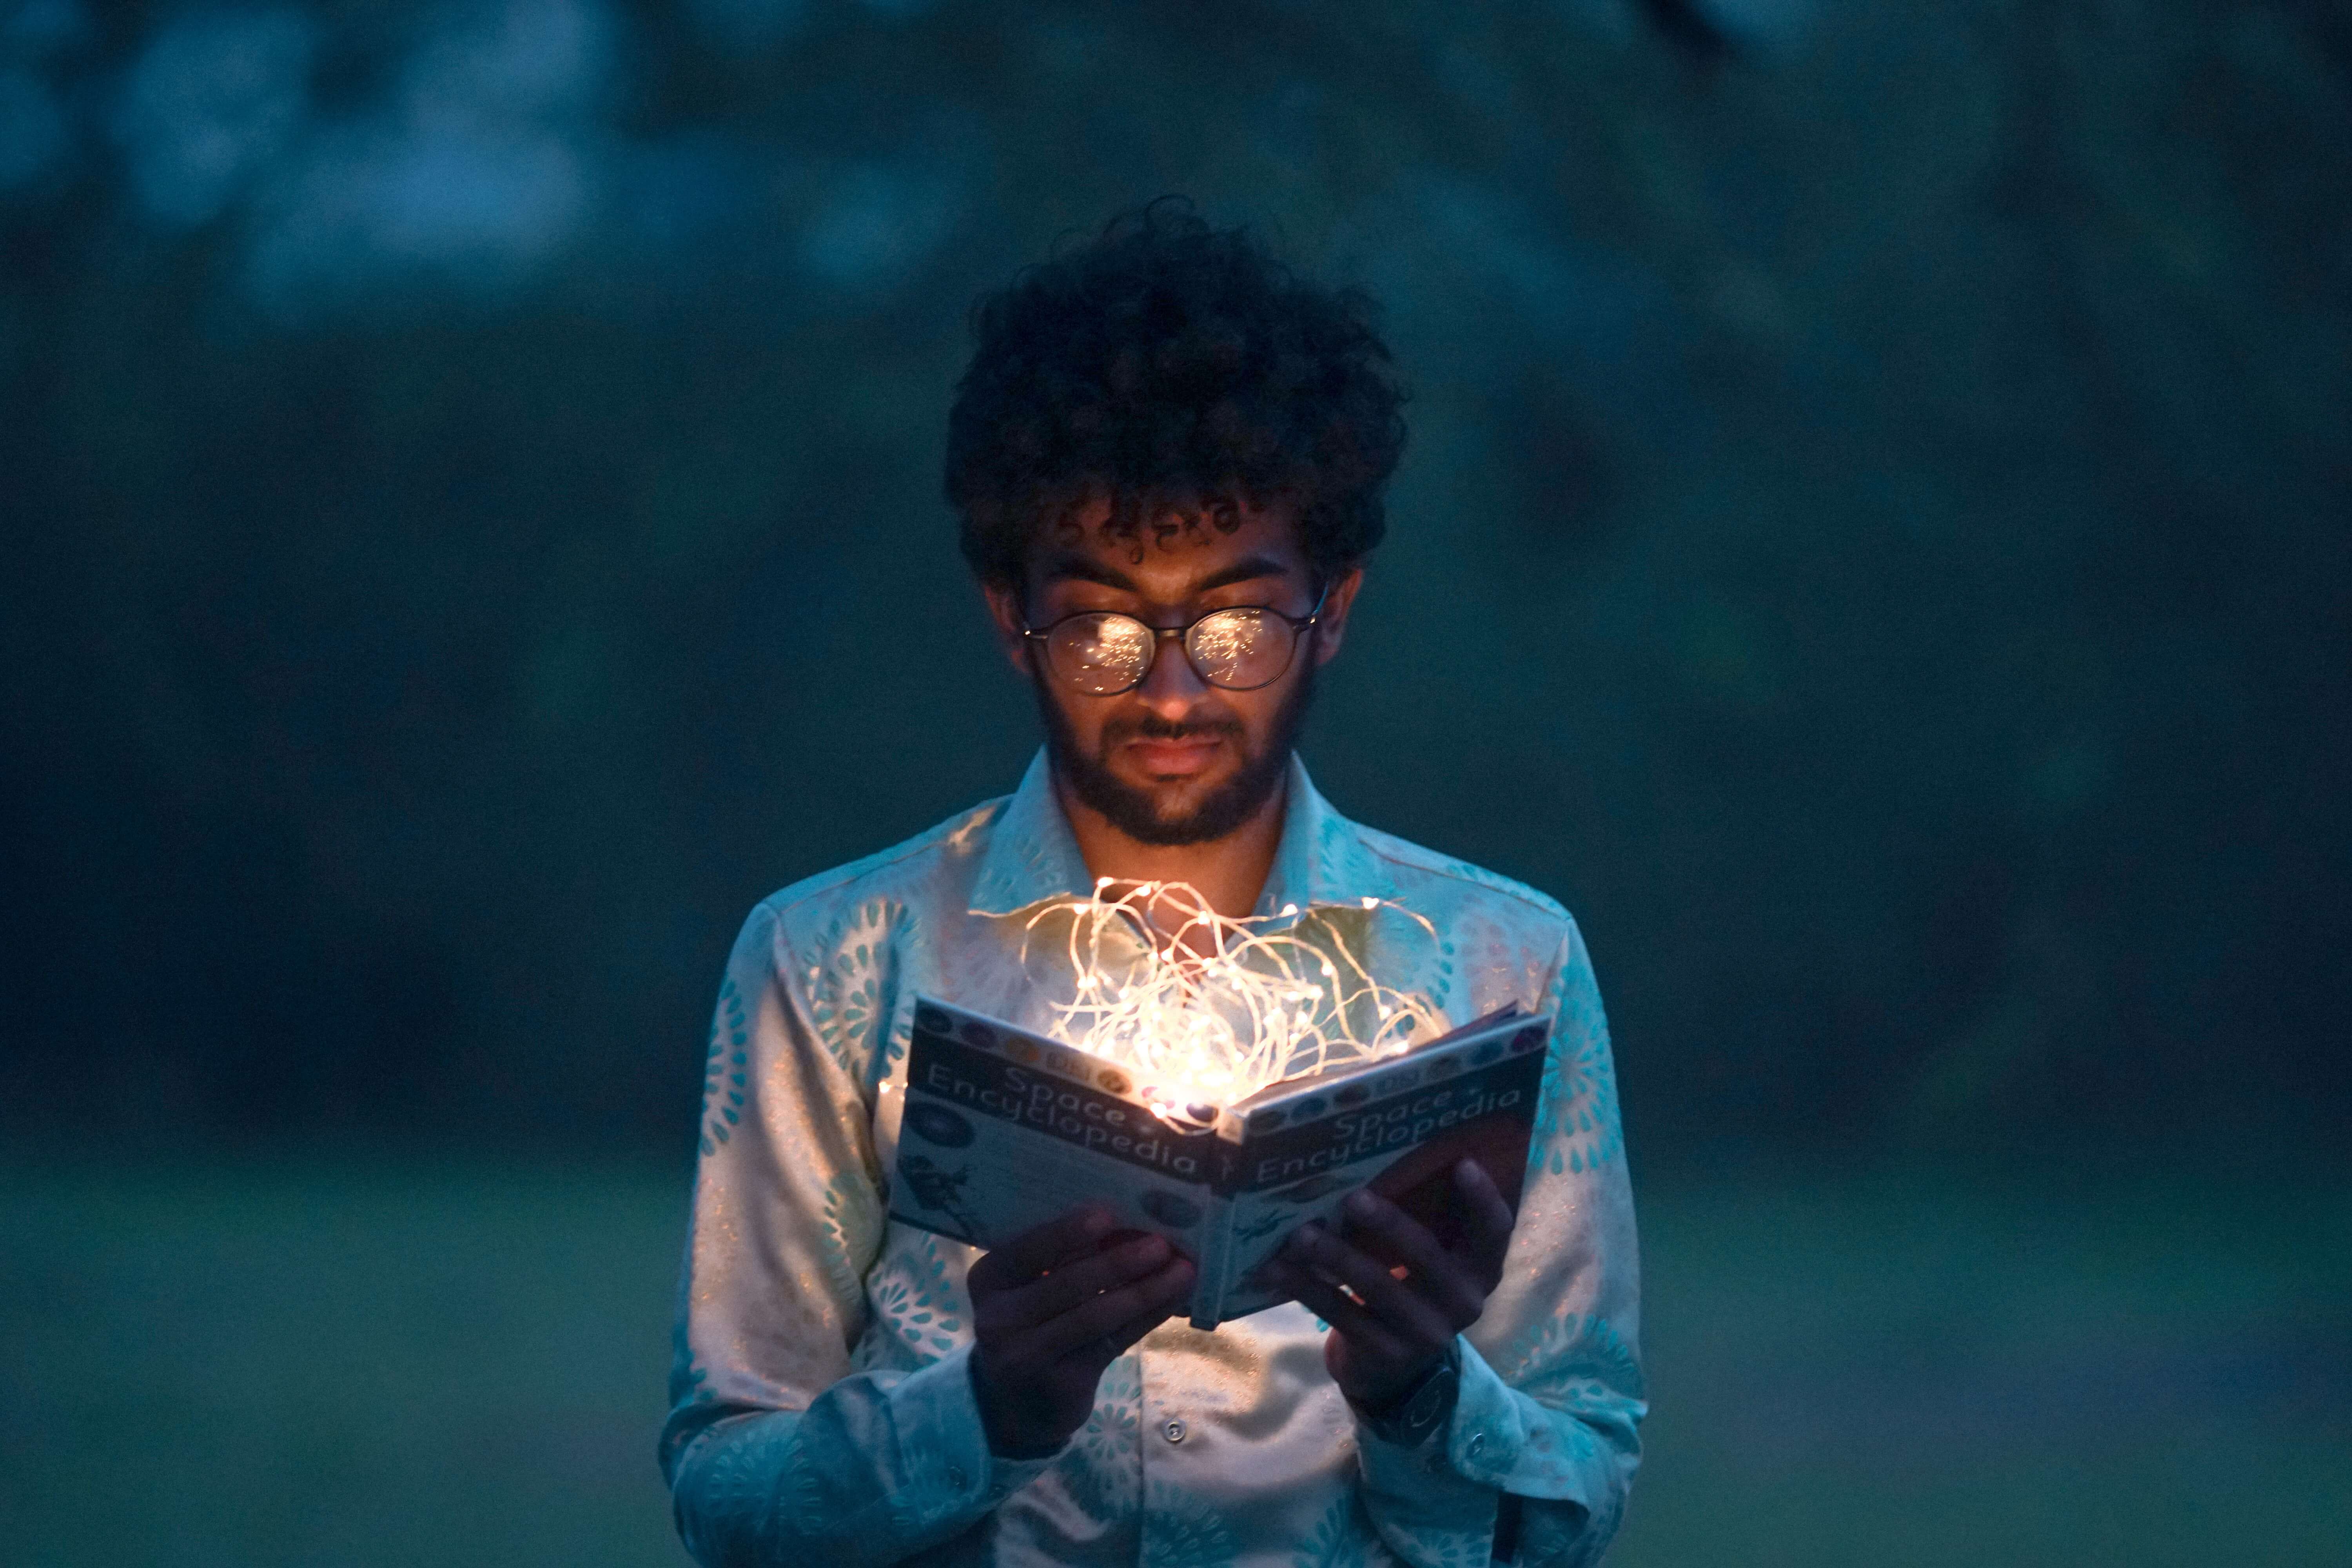 Jongeman met zwarte krulletjes leest lichtgevend boek